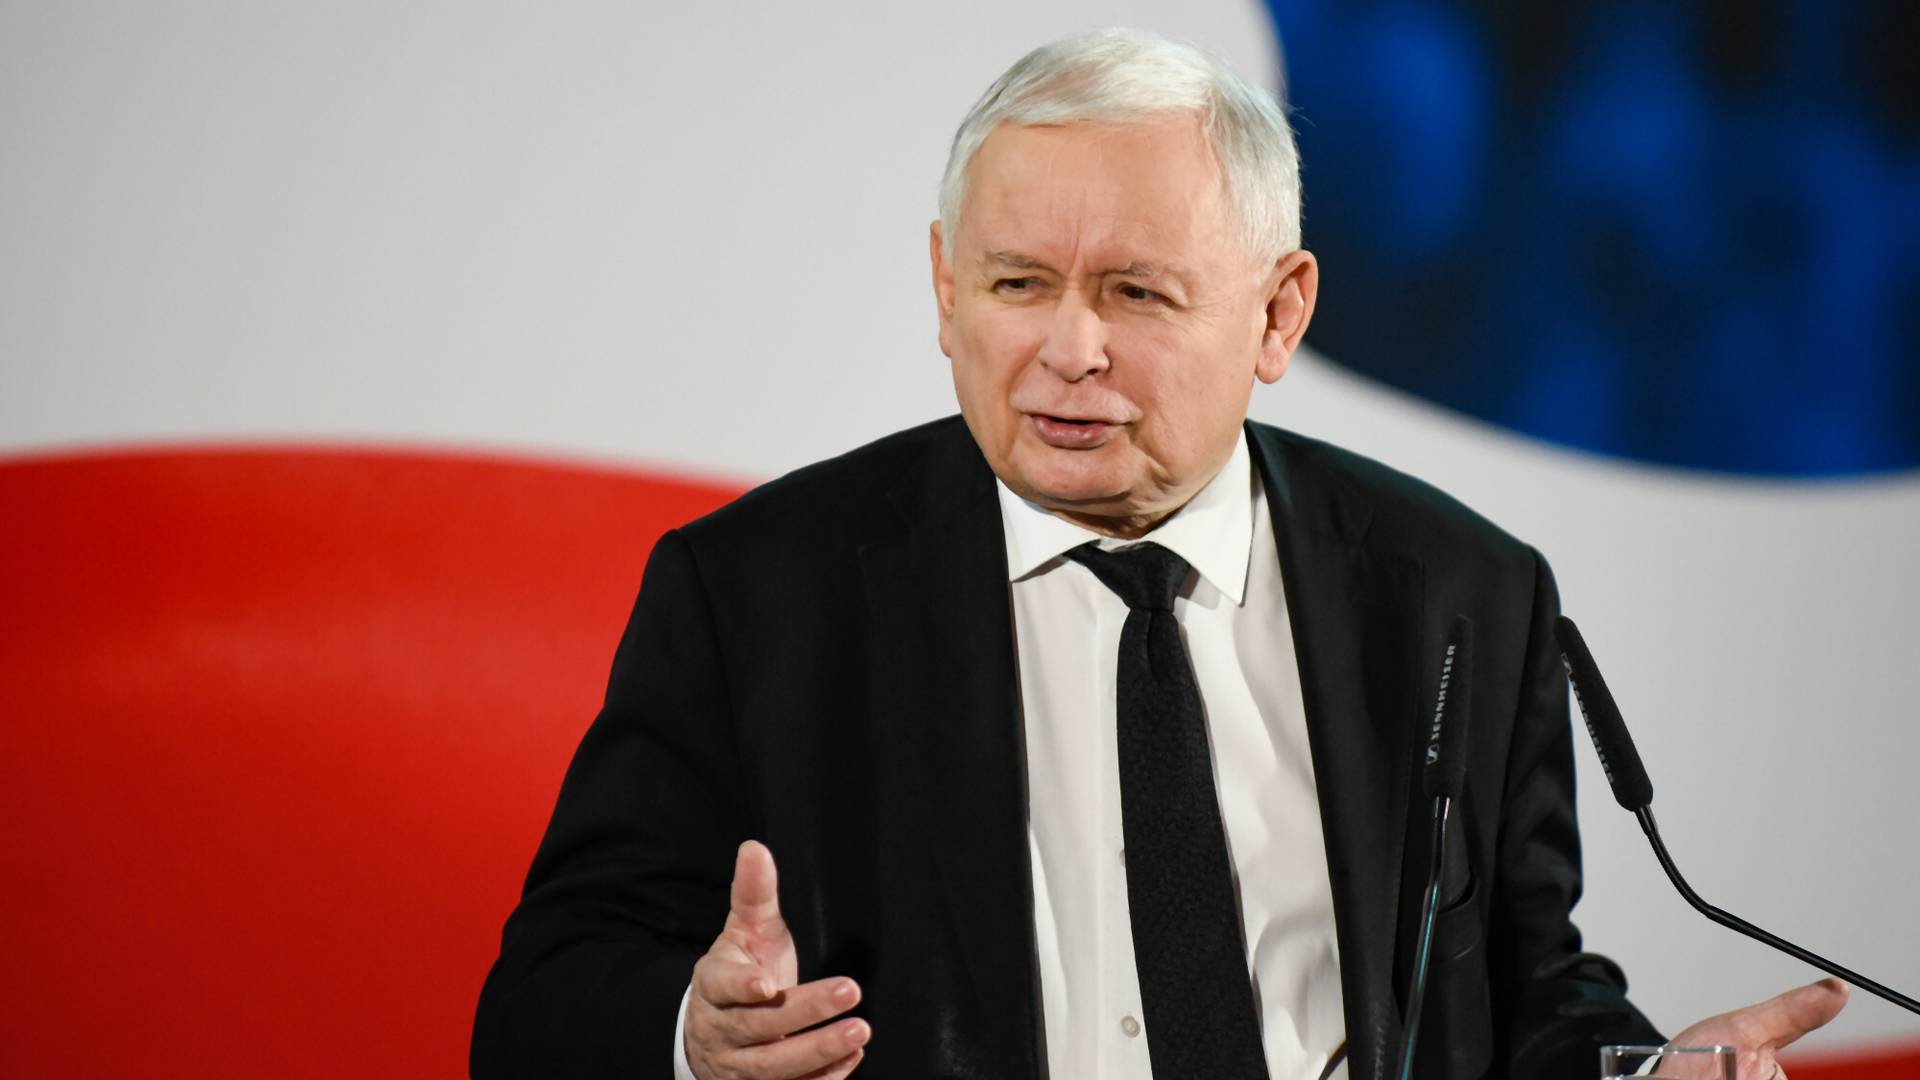 Kaczyński ma sposób na spadek cen wynajmu: znaczący podatek od pustych mieszkań